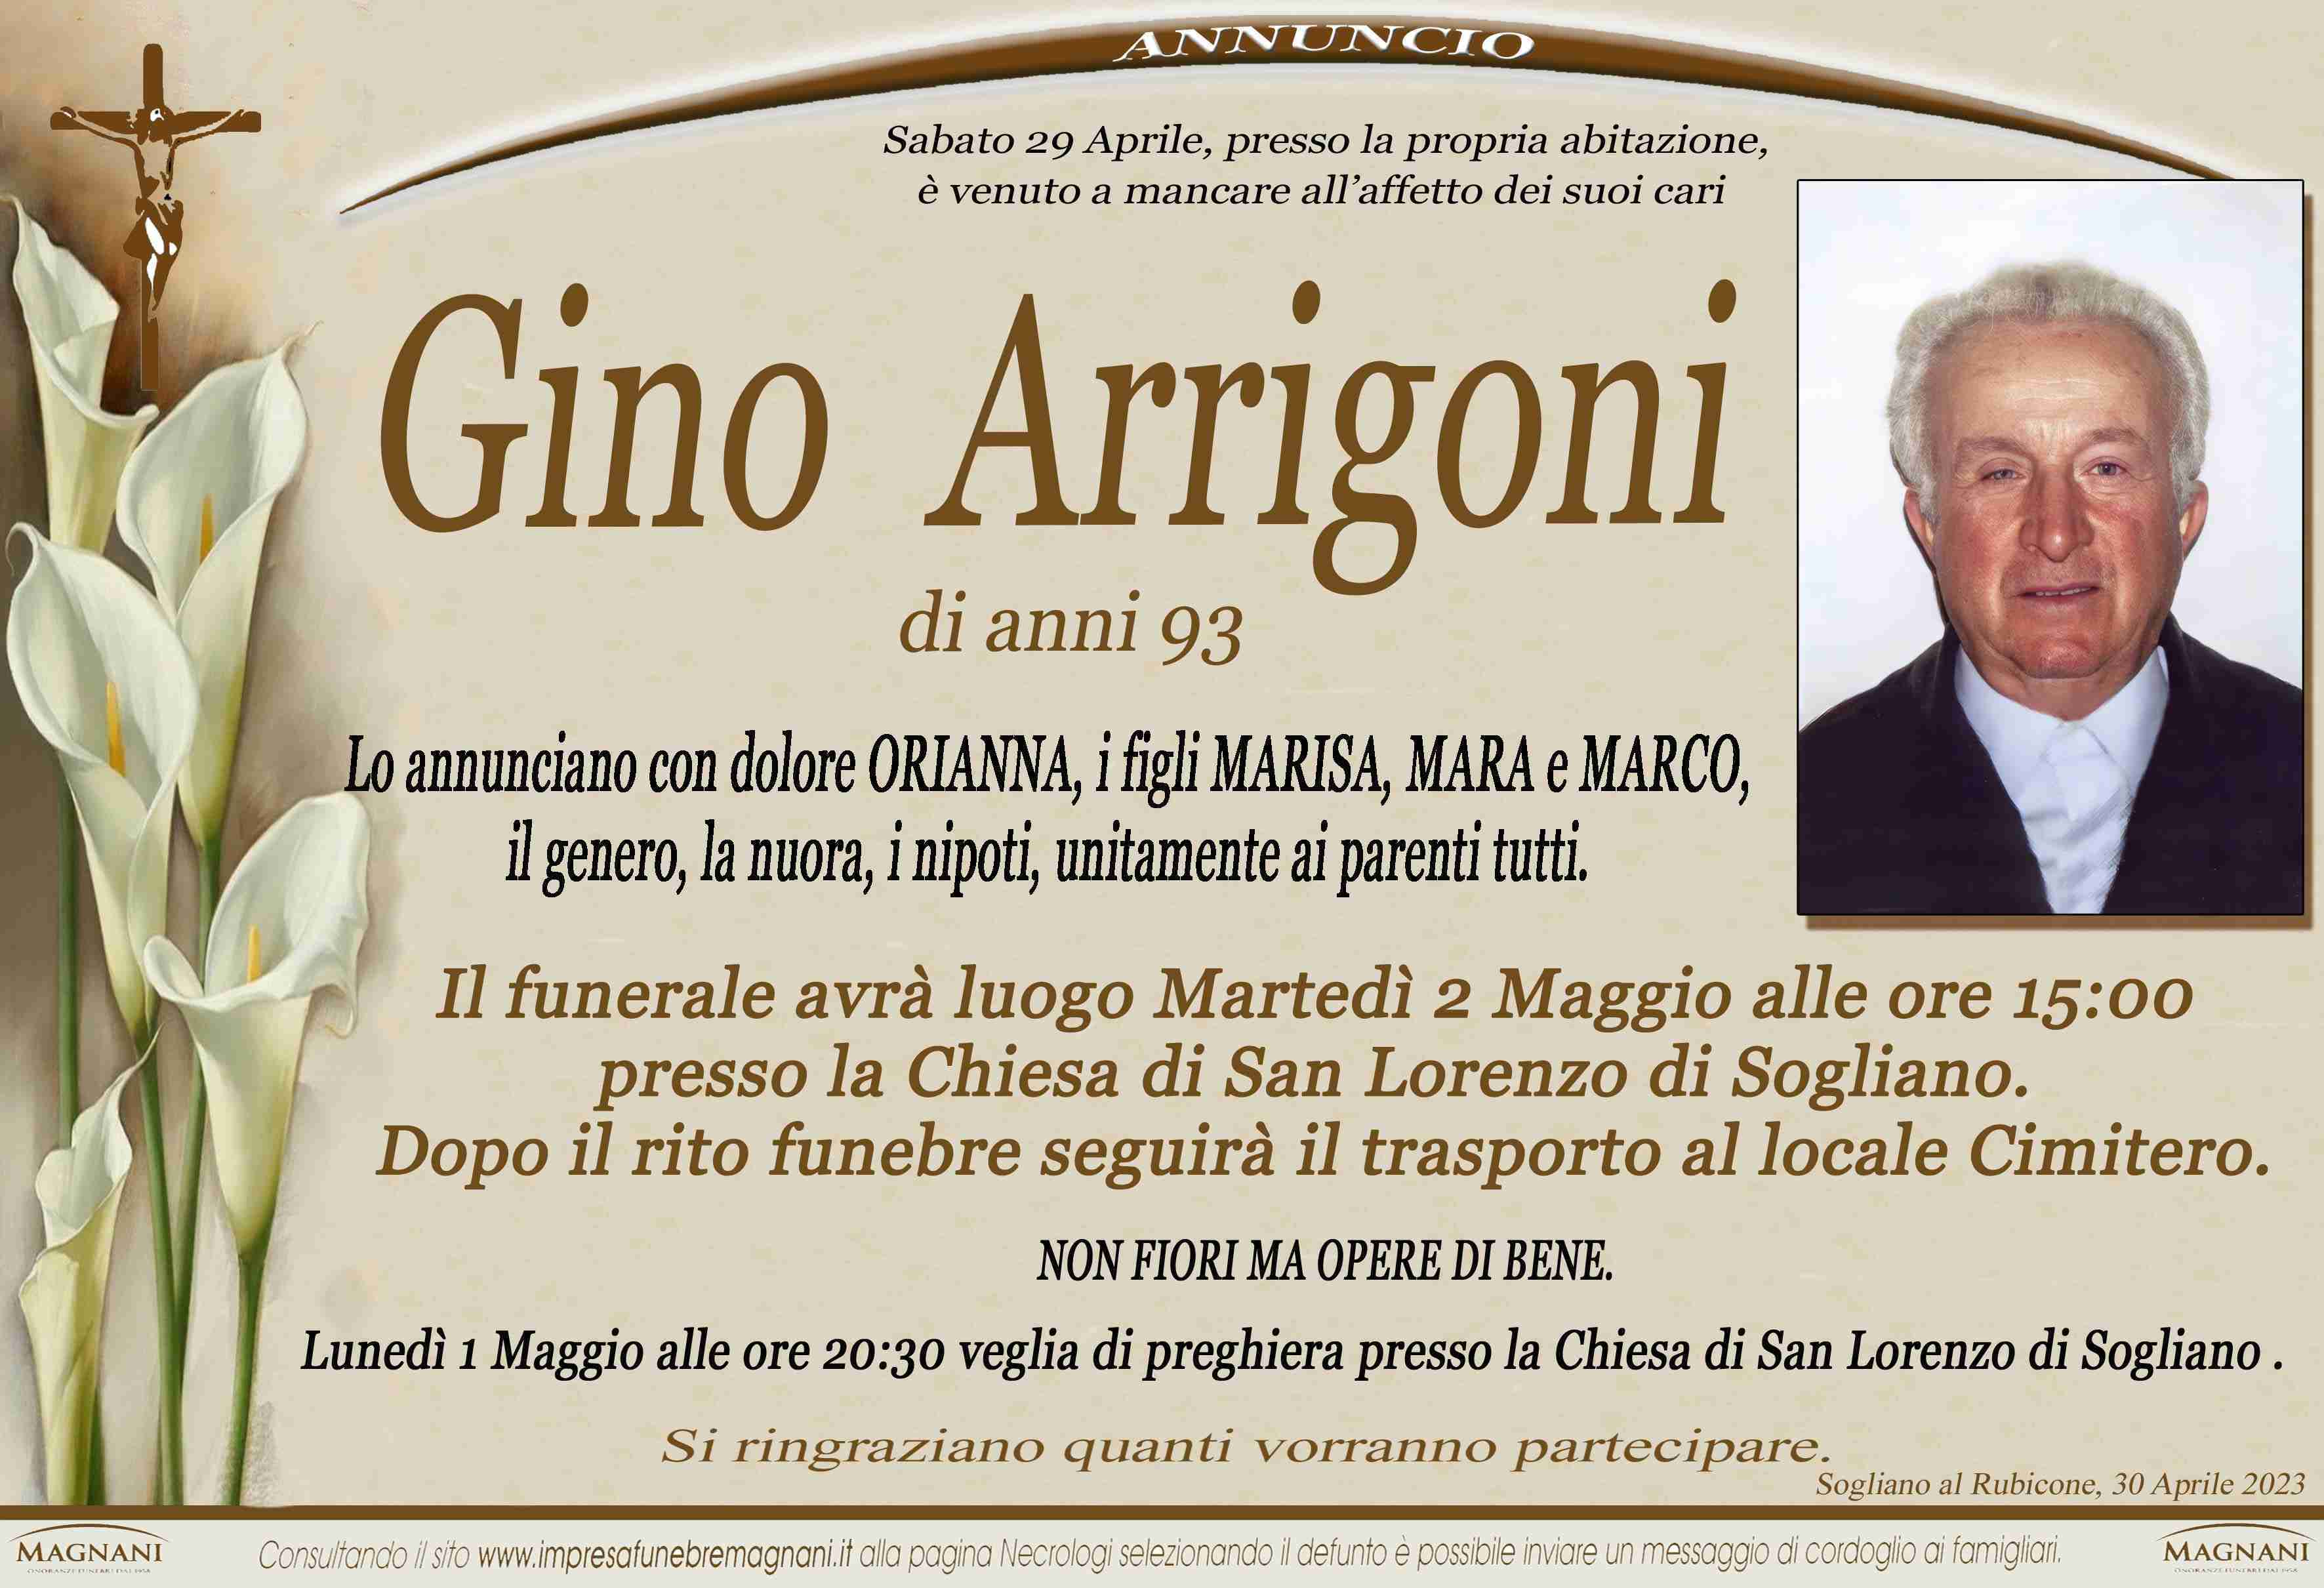 Gino Arrigoni